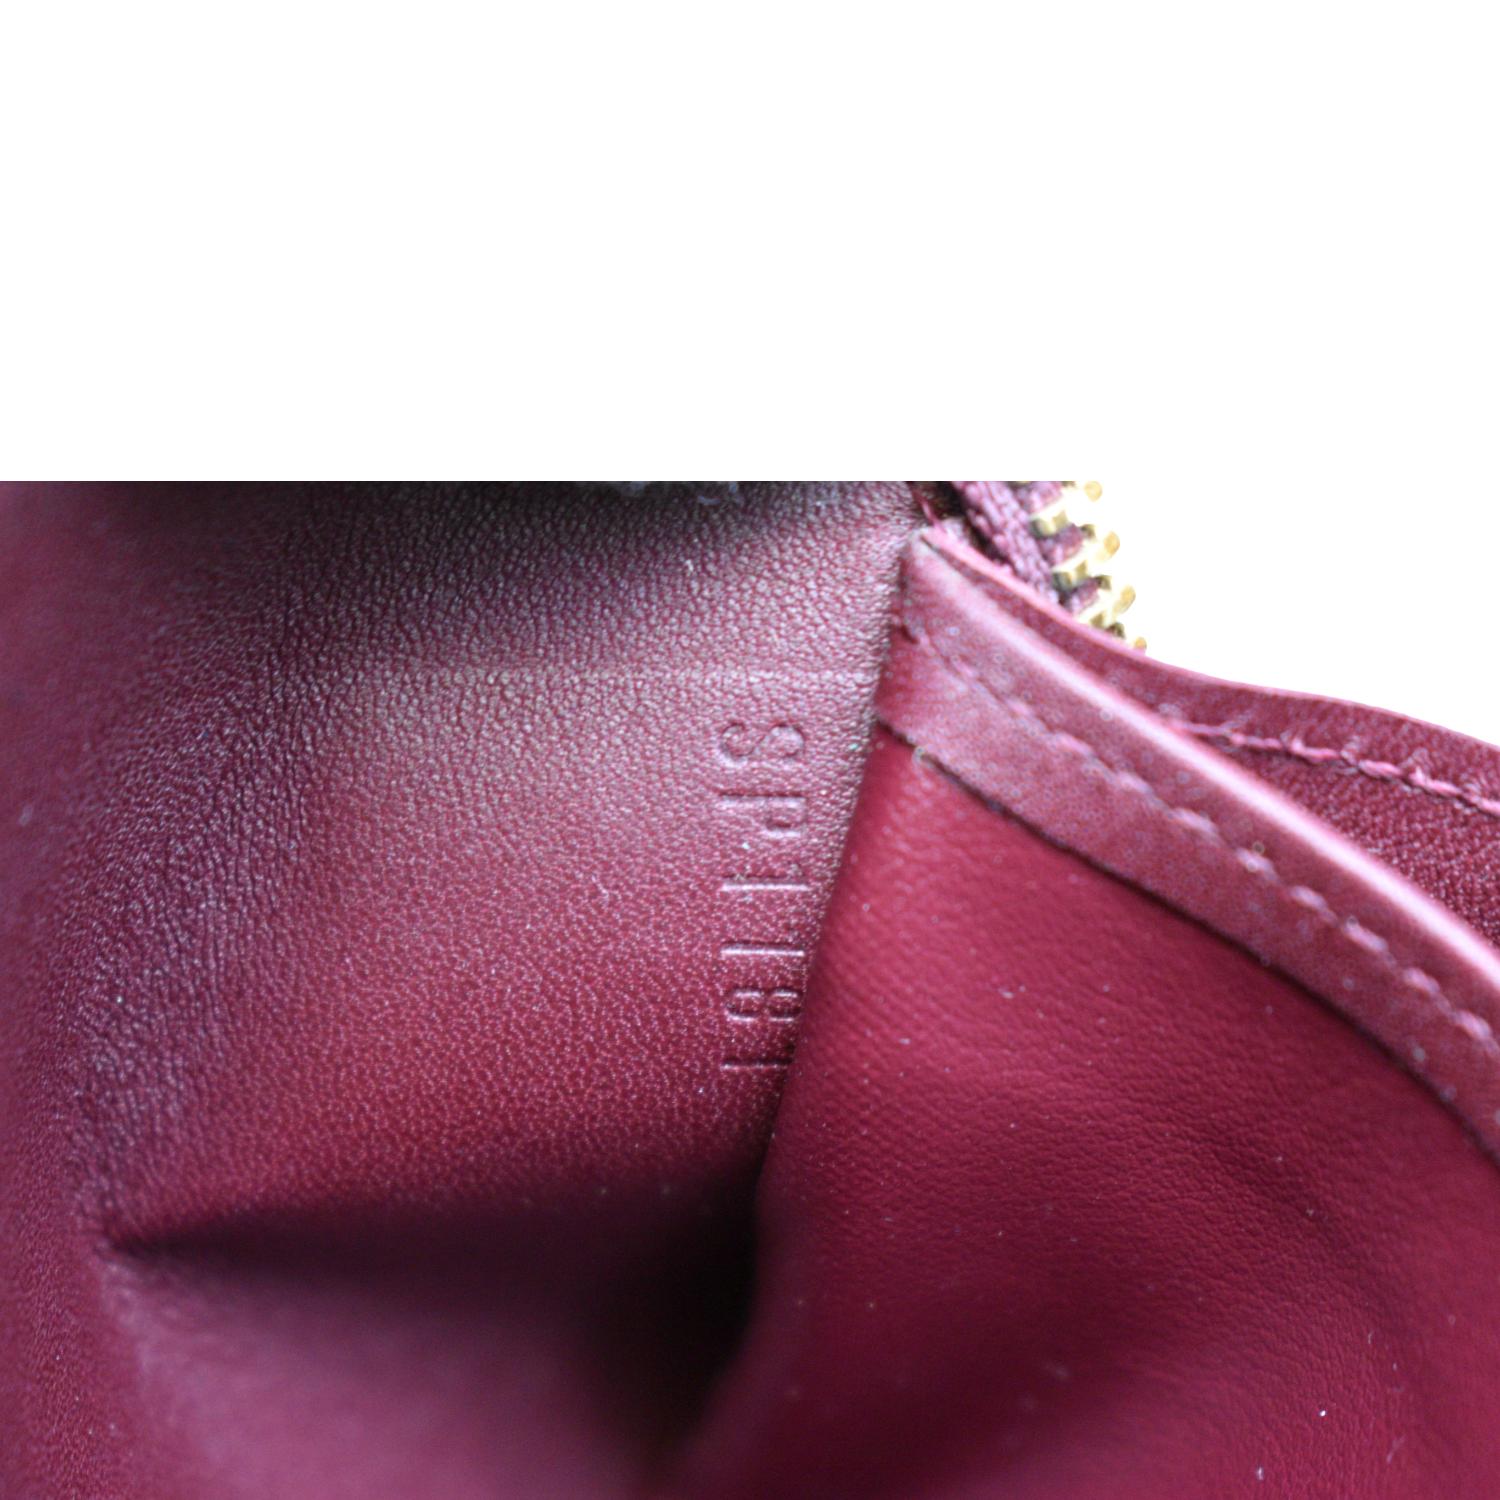 Louis Vuitton Purple Vernis Zippy Wallet